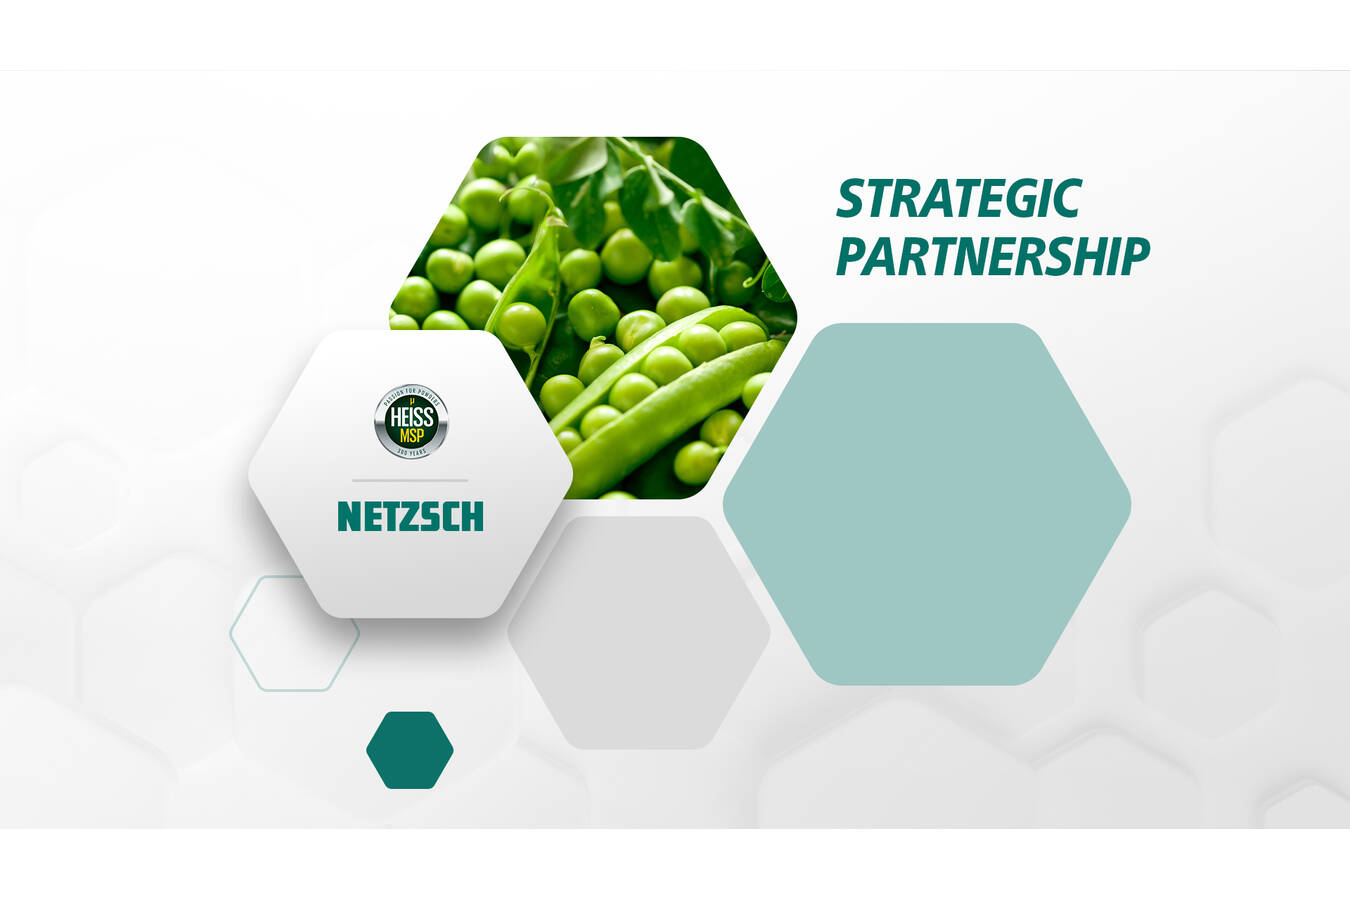 NETZSCH G&D und Heiss MSP unterzeichnen Kooperationsvertrag Zusammenarbeit zur Herstellung nachhaltiger Proteinkonzentrate aus der Trockenfraktionierung, wobei die höchsten Standards im Lebensmittelbereich erfüllt werden.